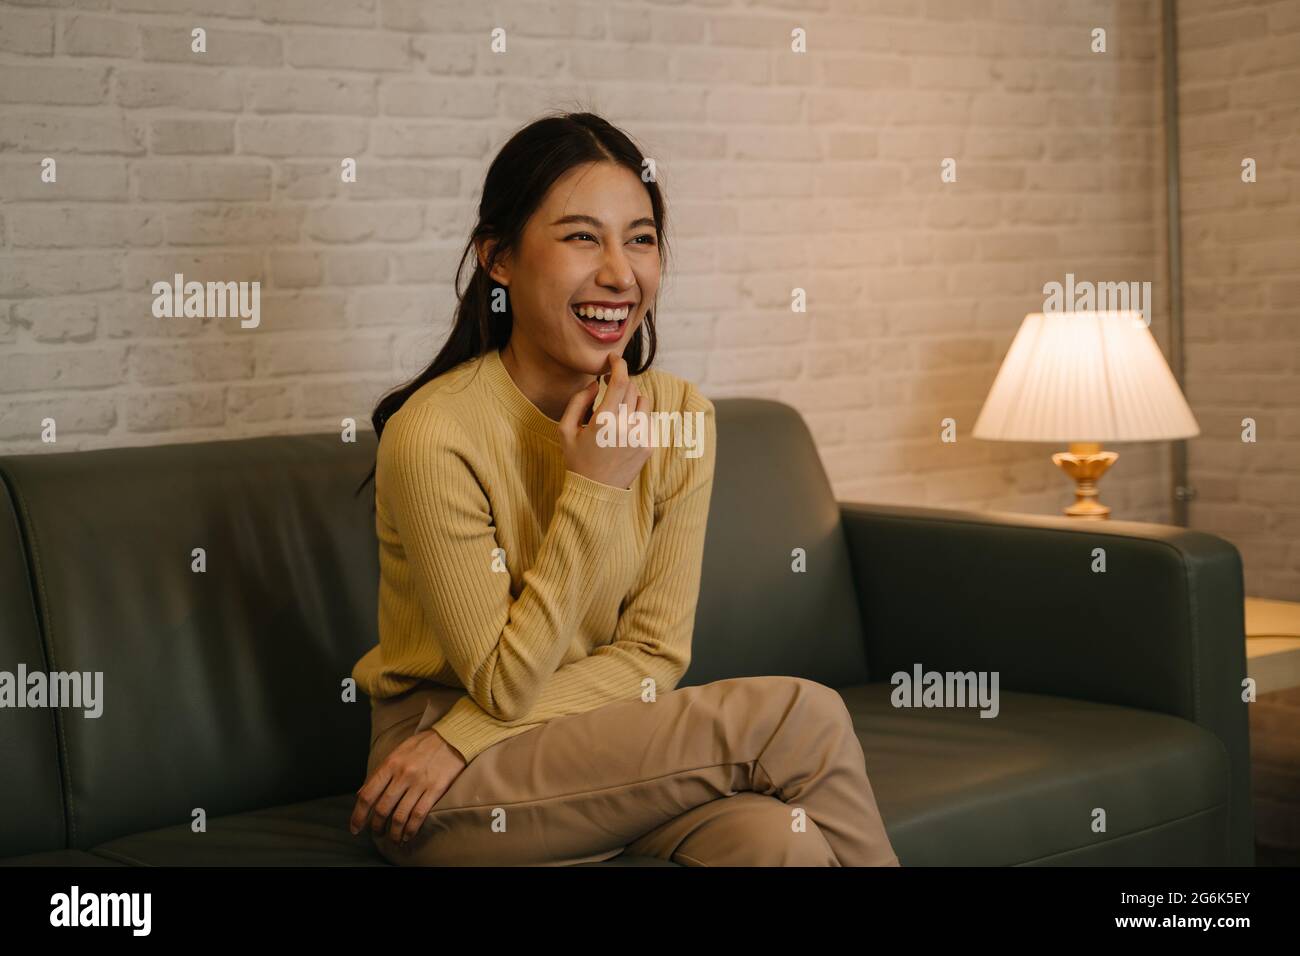 Fröhliche junge asiatische Frau, die zu Hause auf der Couch sitzt und lacht, entspannt, während sie abends Comedy-Shows und Filme im Fernsehen sieht Stockfoto